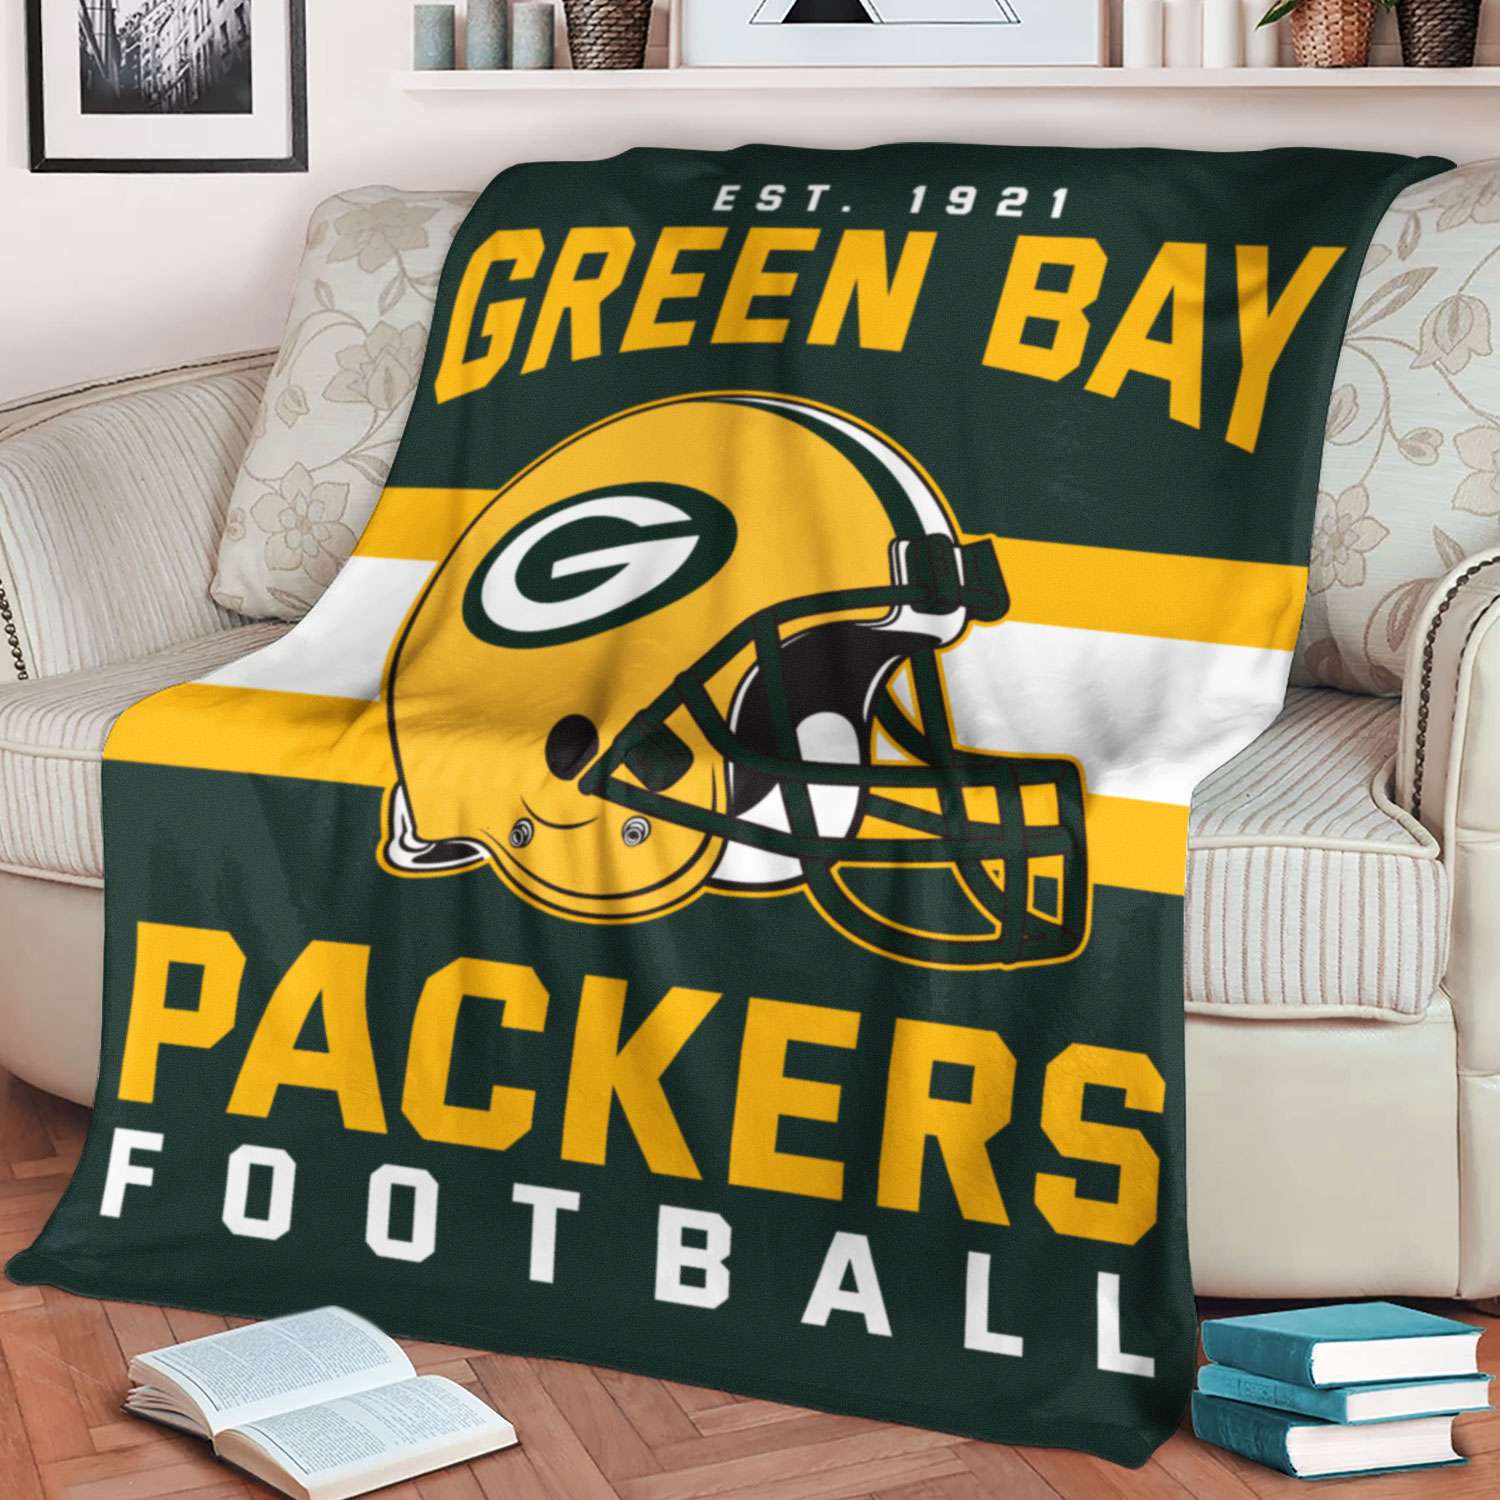 Green Bay Packers NFL Football Team Helmet Blanket